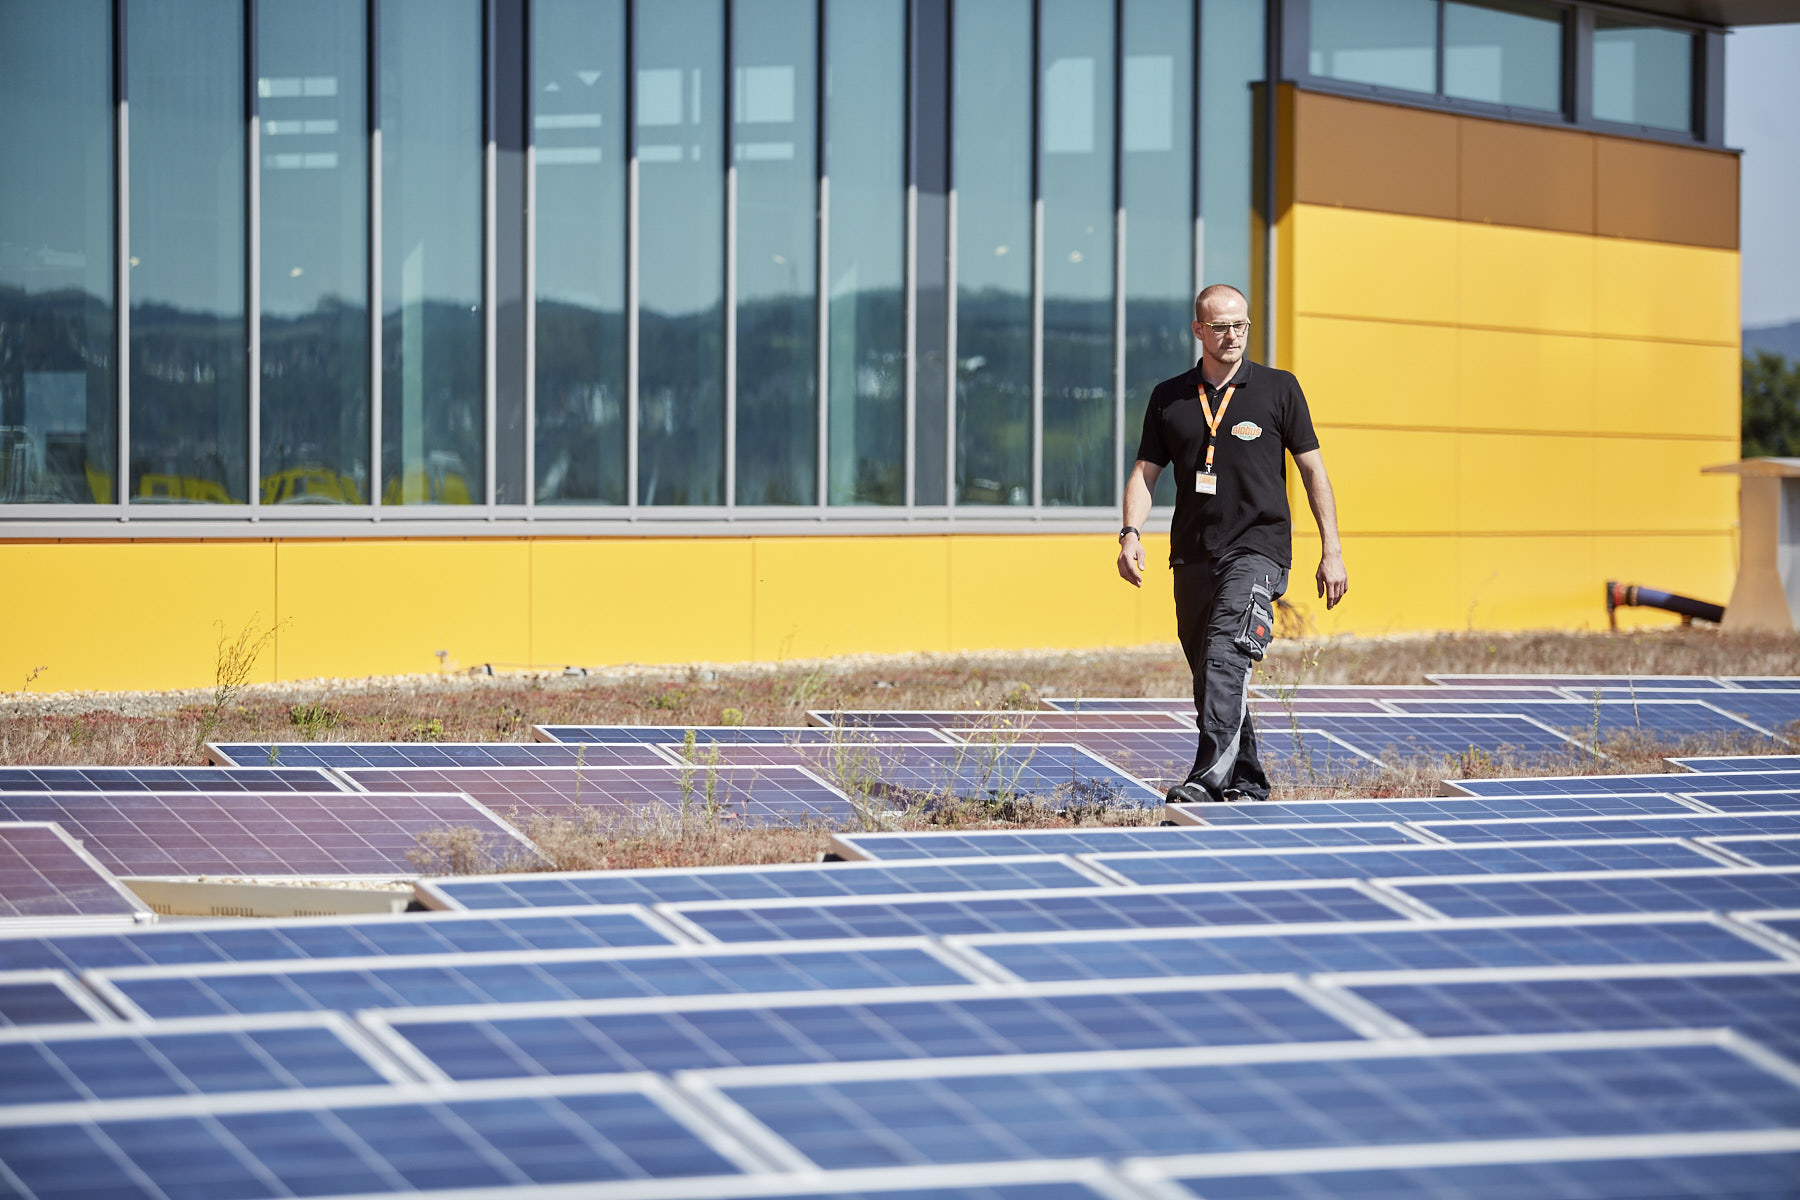 Photovoltaikanlage auf dem Dach eines Globus. Ein Mitarbeiter von Globus läuft zwischen den Anlagen hindurch.